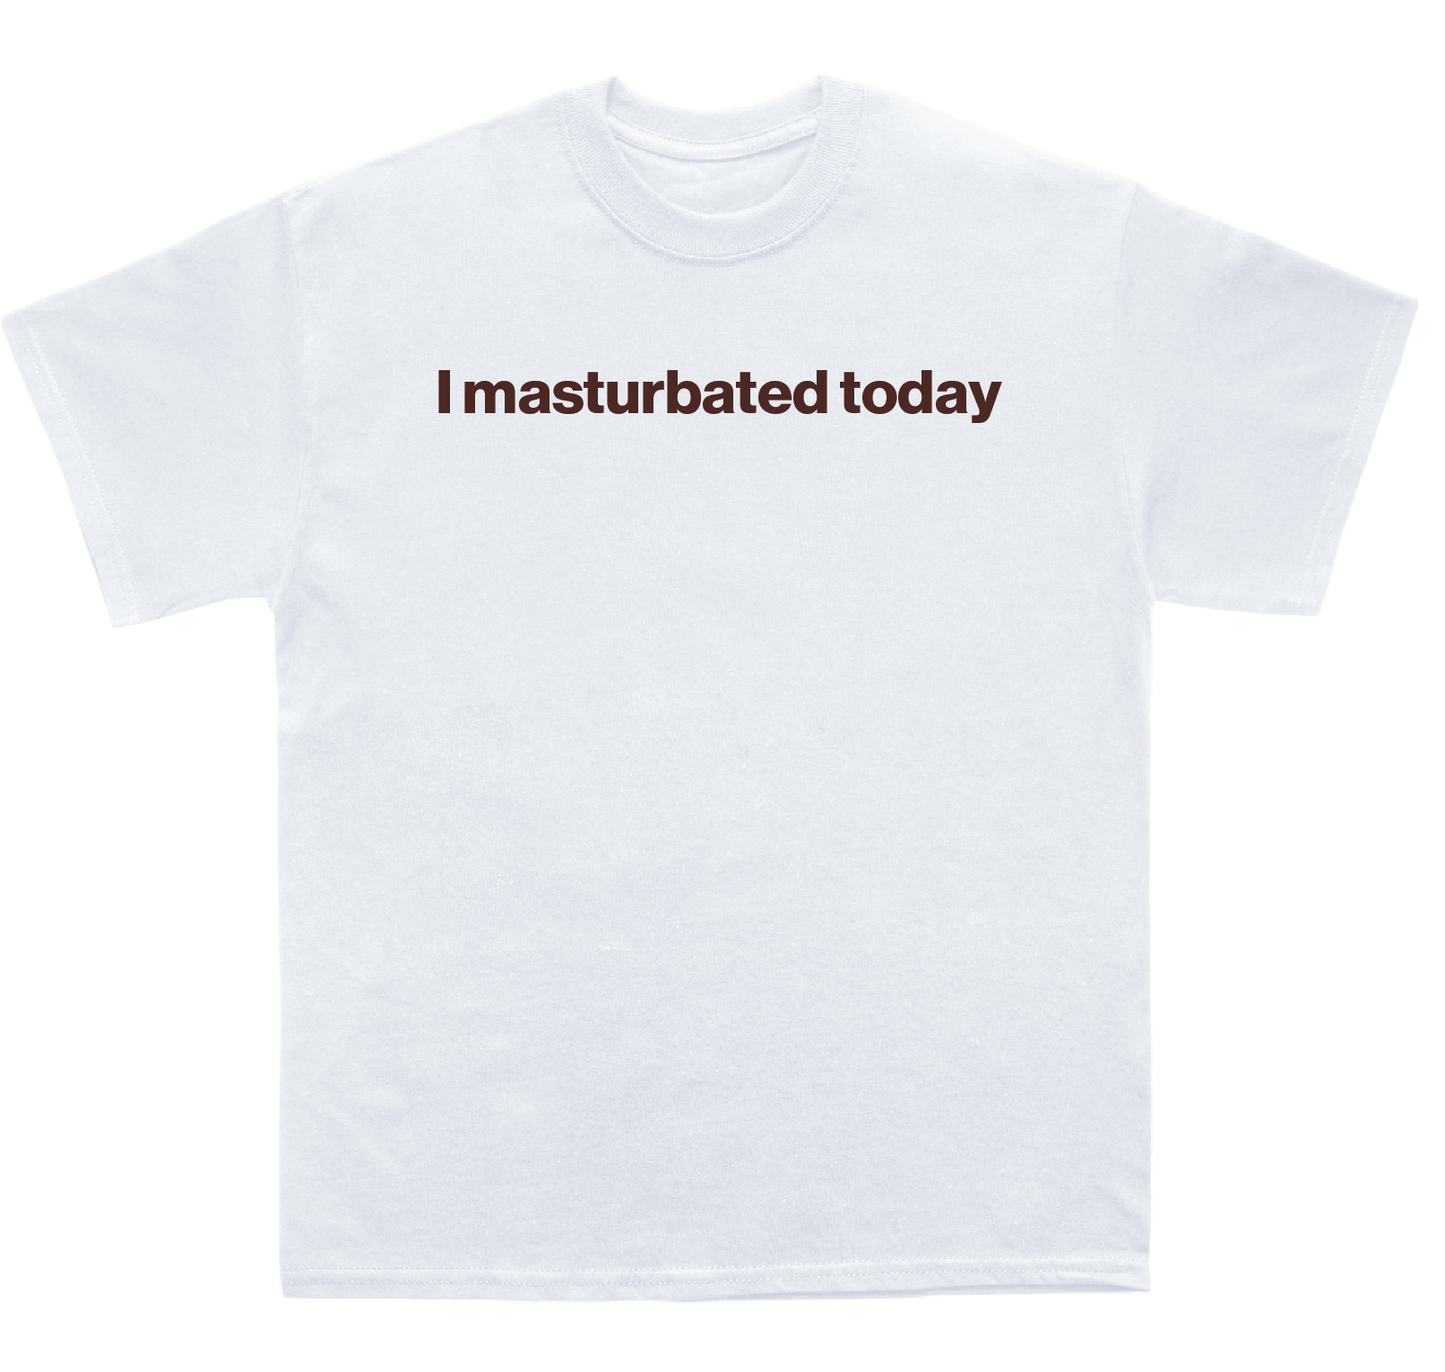 I masturbated today shirt